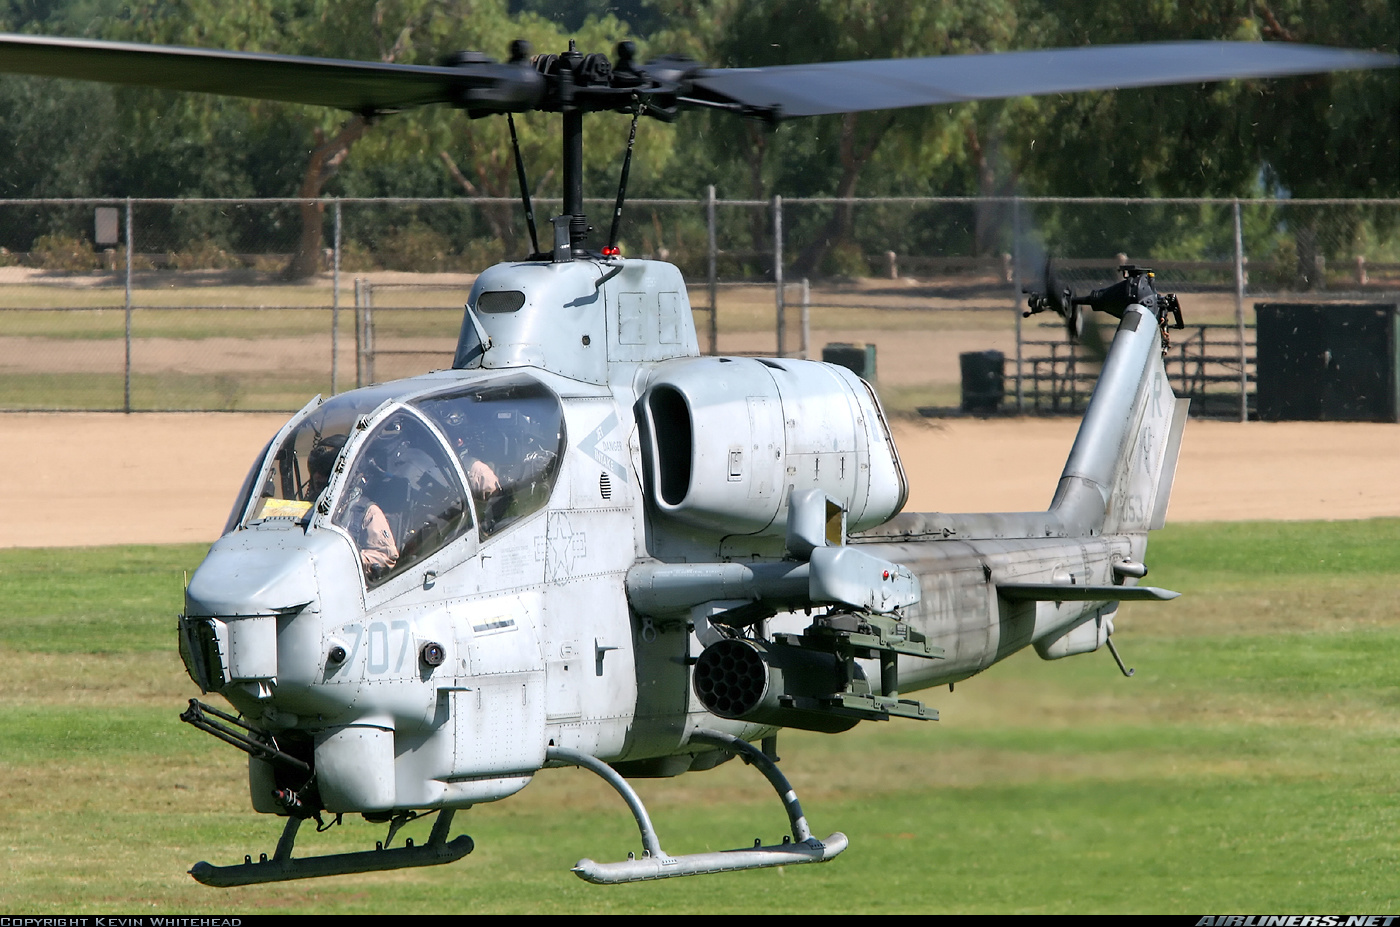 Bell ah 1 cobra. Вертолет Ah-1w "супер Кобра". Вертолет Bell Ah-1 Cobra. Ah-1 super Cobra.